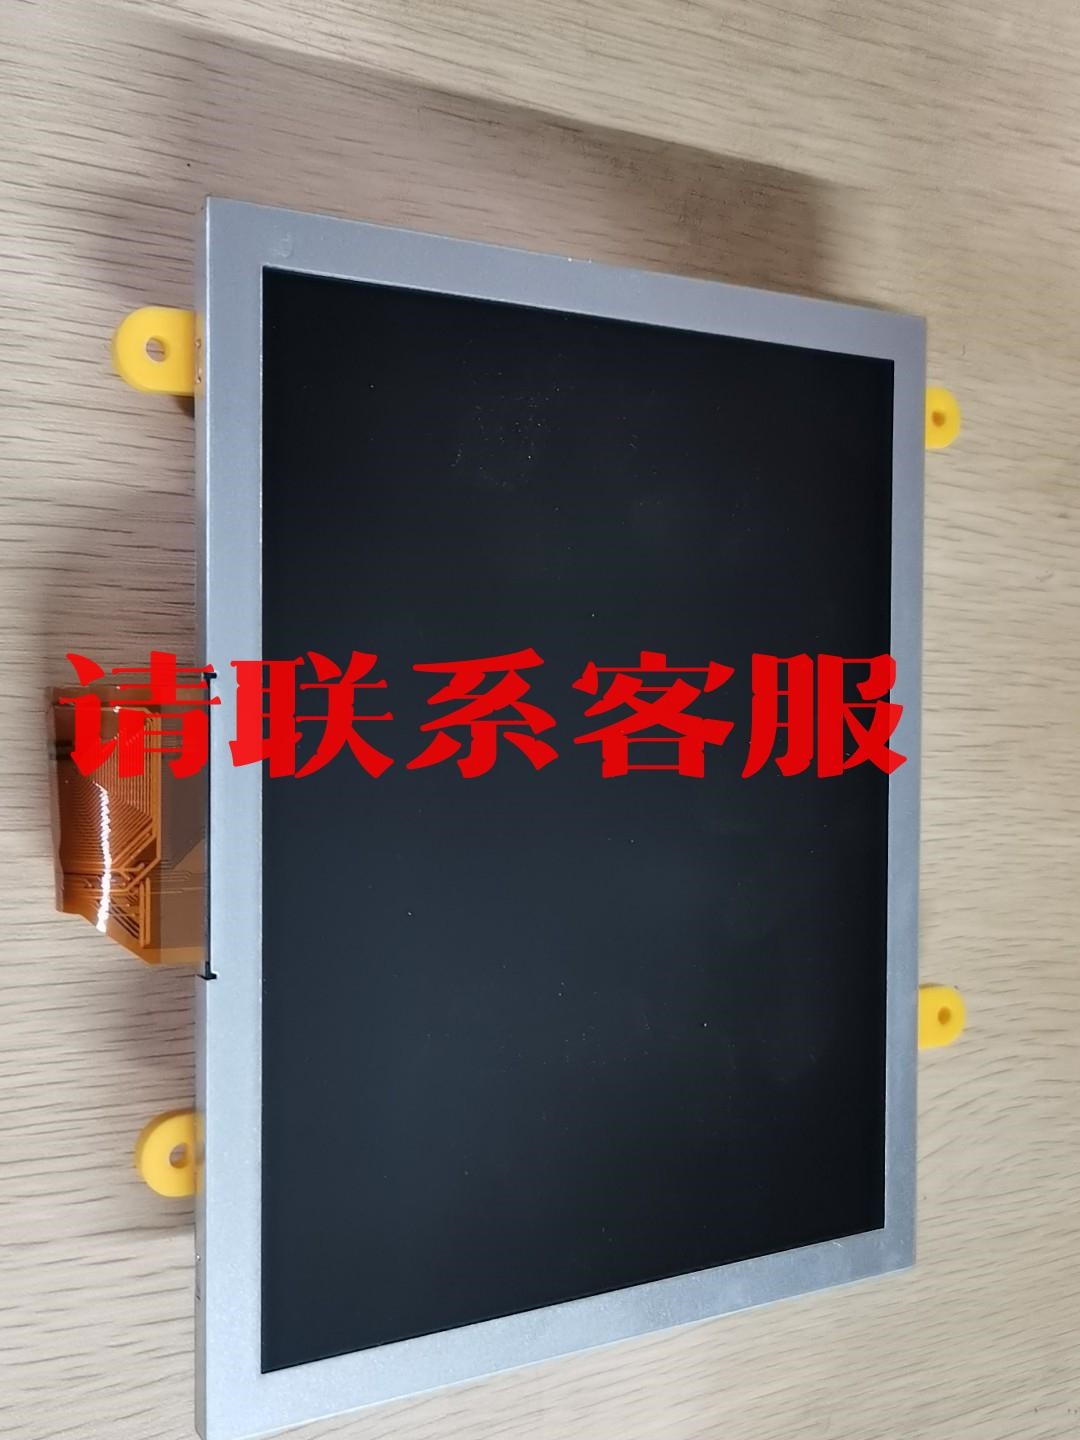 中国雷迪vCam-5管道内窥镜，屏幕拆机件，包好，议价出售